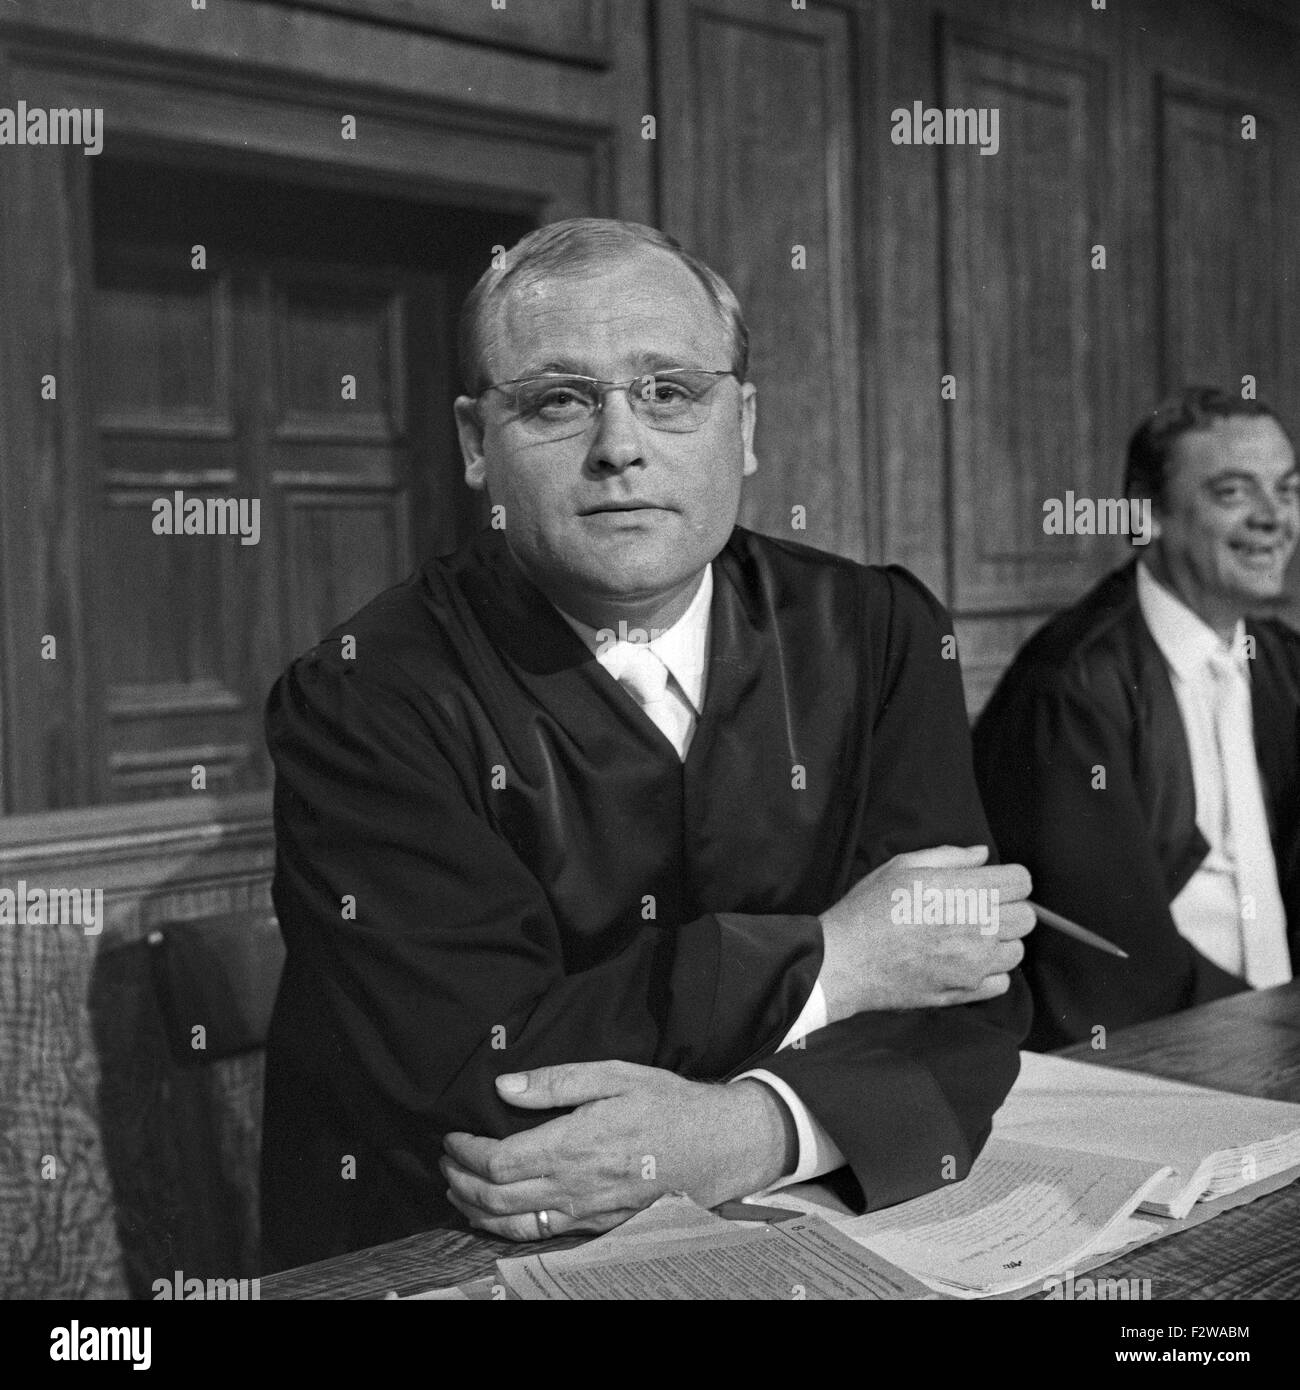 Standgericht, Fernsehfilm, Deutschland 1966, Regie: Rolf Busch, Darsteller: Heinz Theo Branding (?), Friedrich Schütter (rechts) Stock Photo